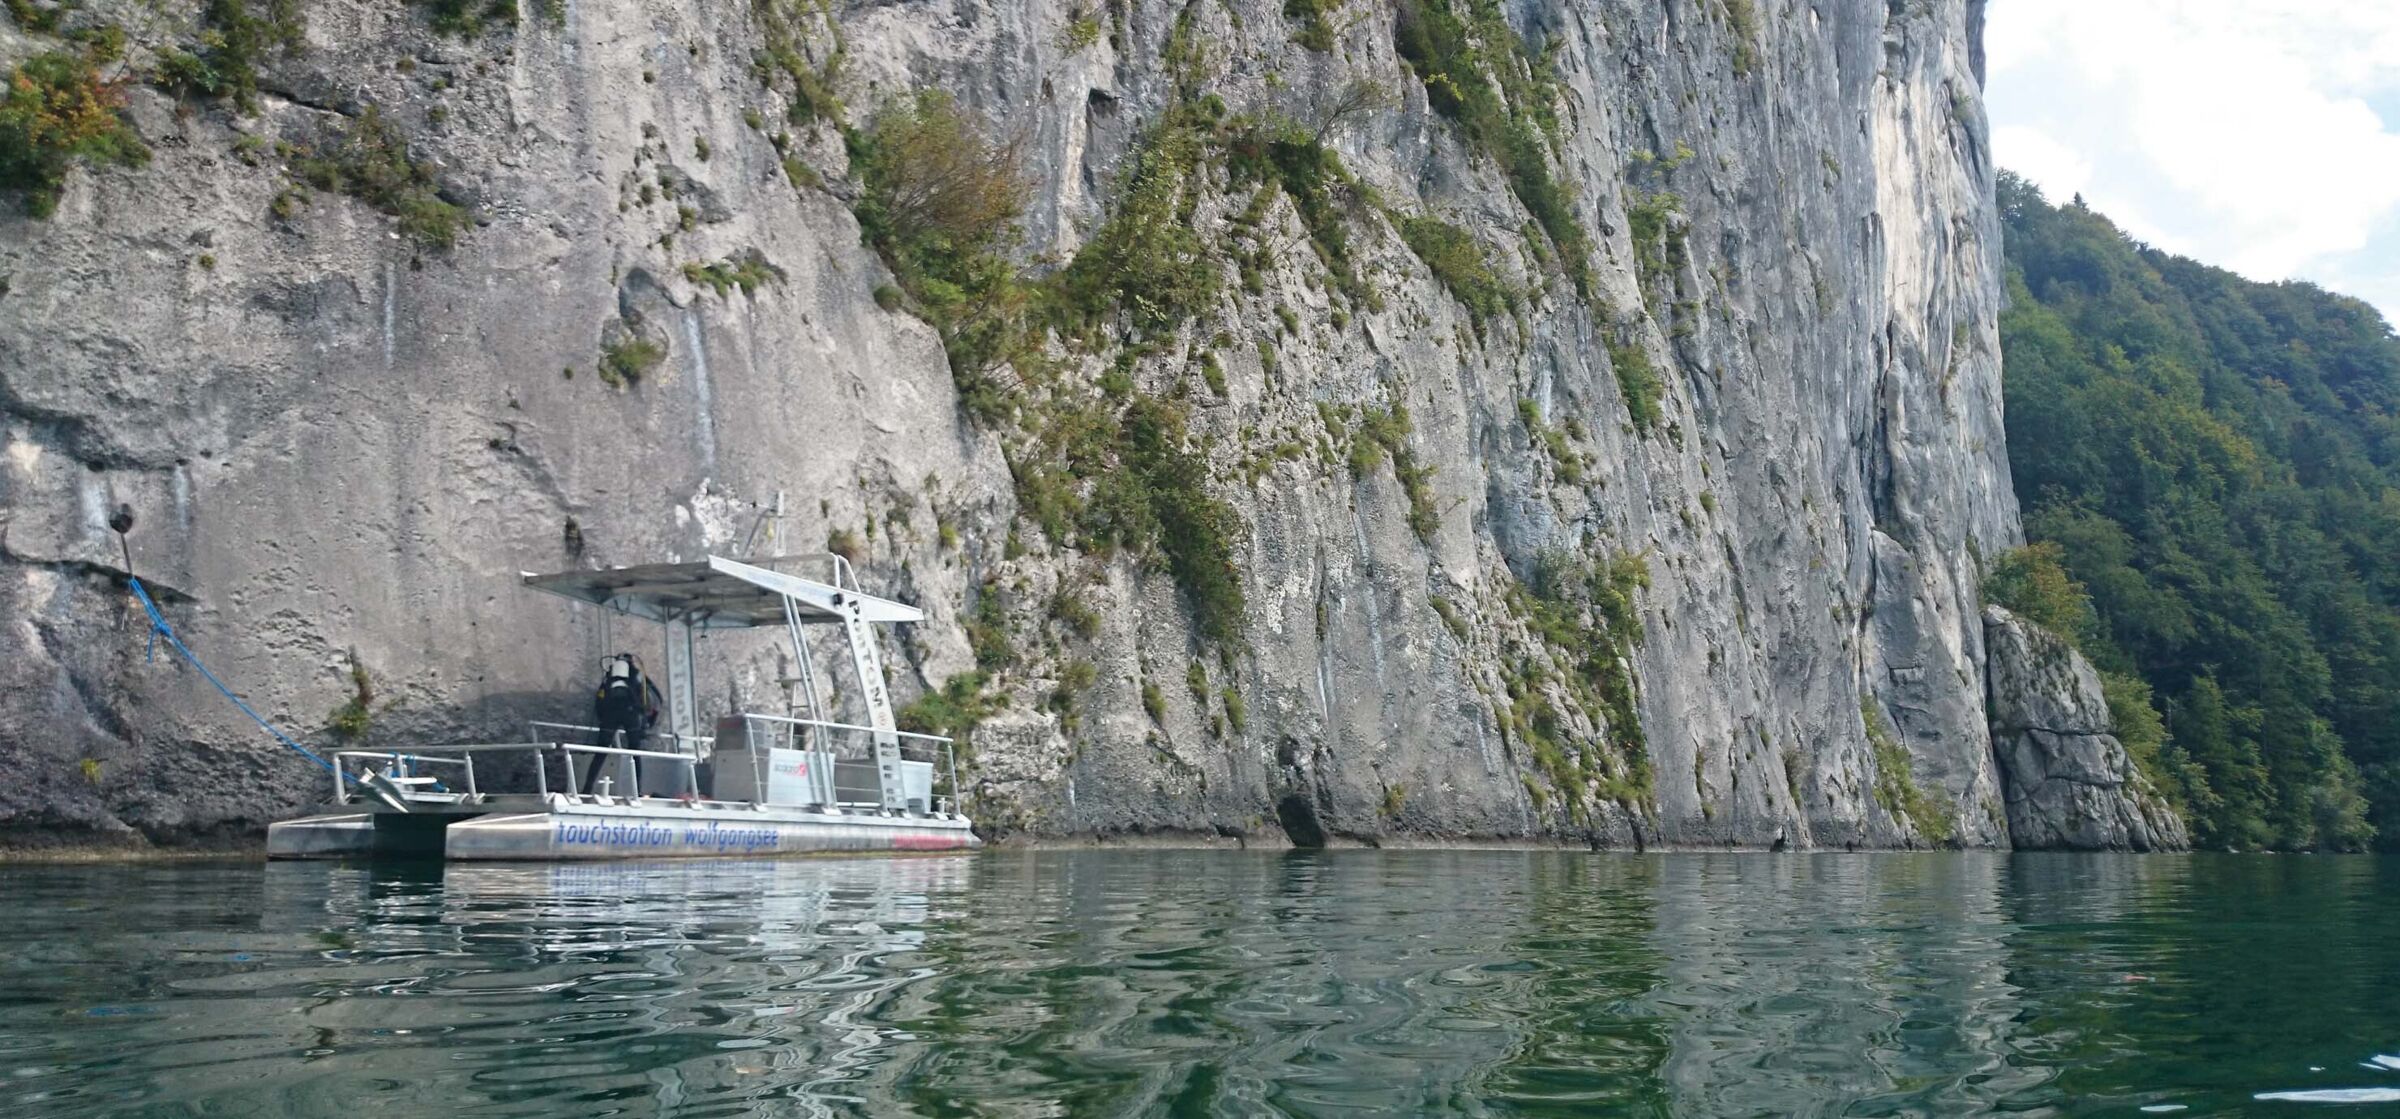 Taucher auf einem Boot im Wolfgangsee vor einer riesigen Felswand bereit zum Los tauchen